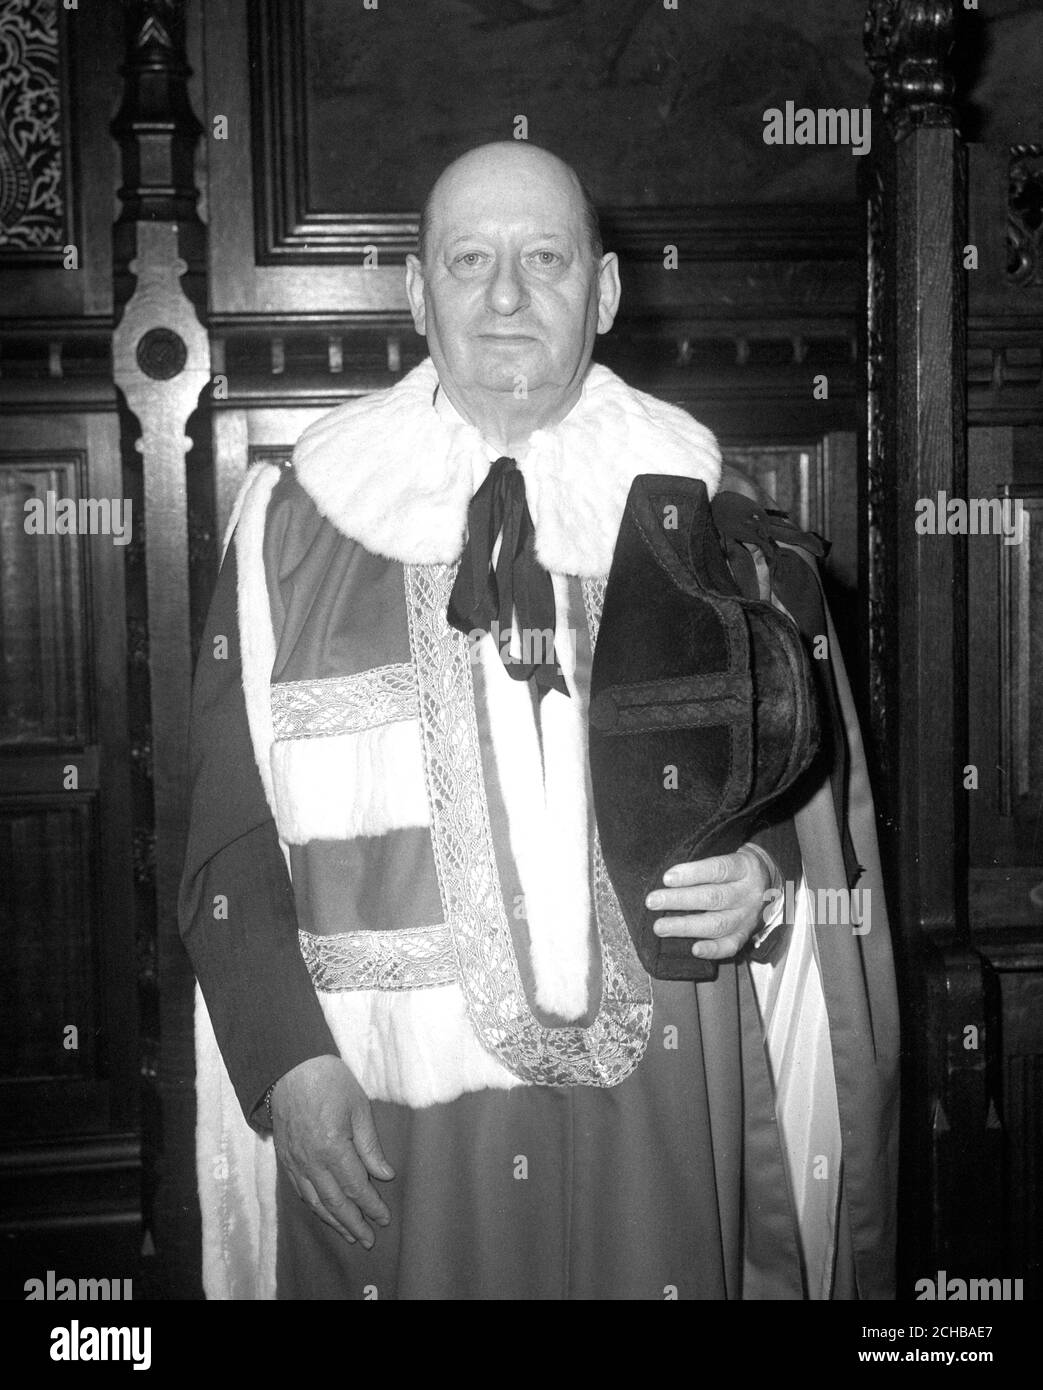 Impresario Sir Lew Grade nel suo nuovo ruolo di Barone grado di Elstree, nella stanza di Mosè in attesa dell'odierna introduzione alla Casa dei Lord. Foto Stock